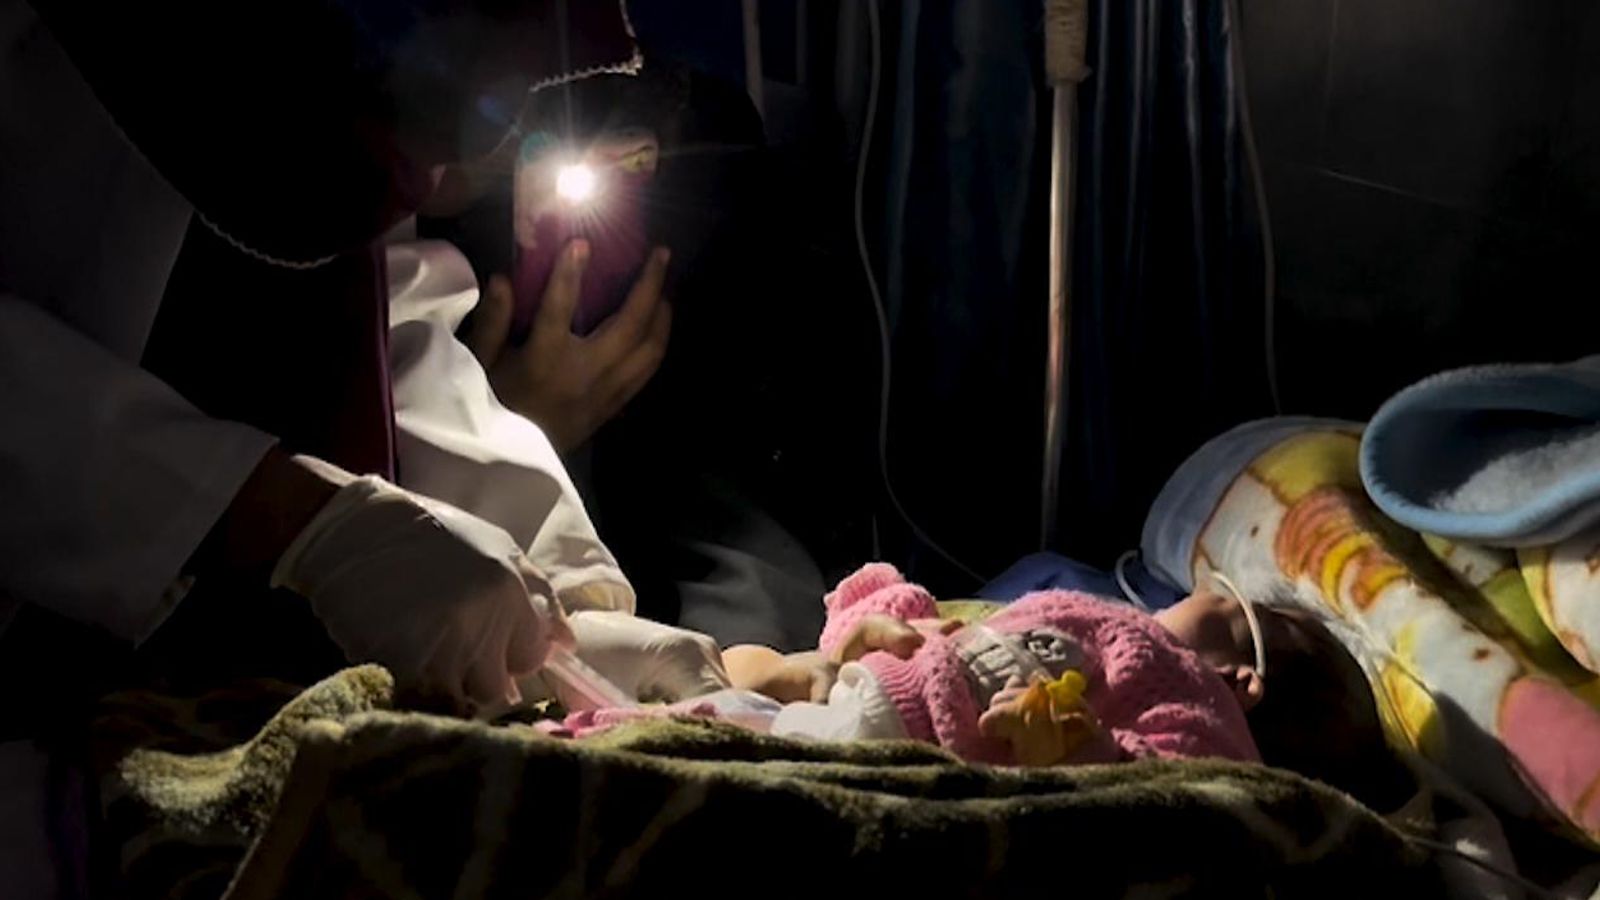 Gaza-Krankenhaus, wo die Behandlung bei Fackelschein durchgeführt wird und 13 Kinder an einem Tag an Unterernährung starben |  Weltnachrichten